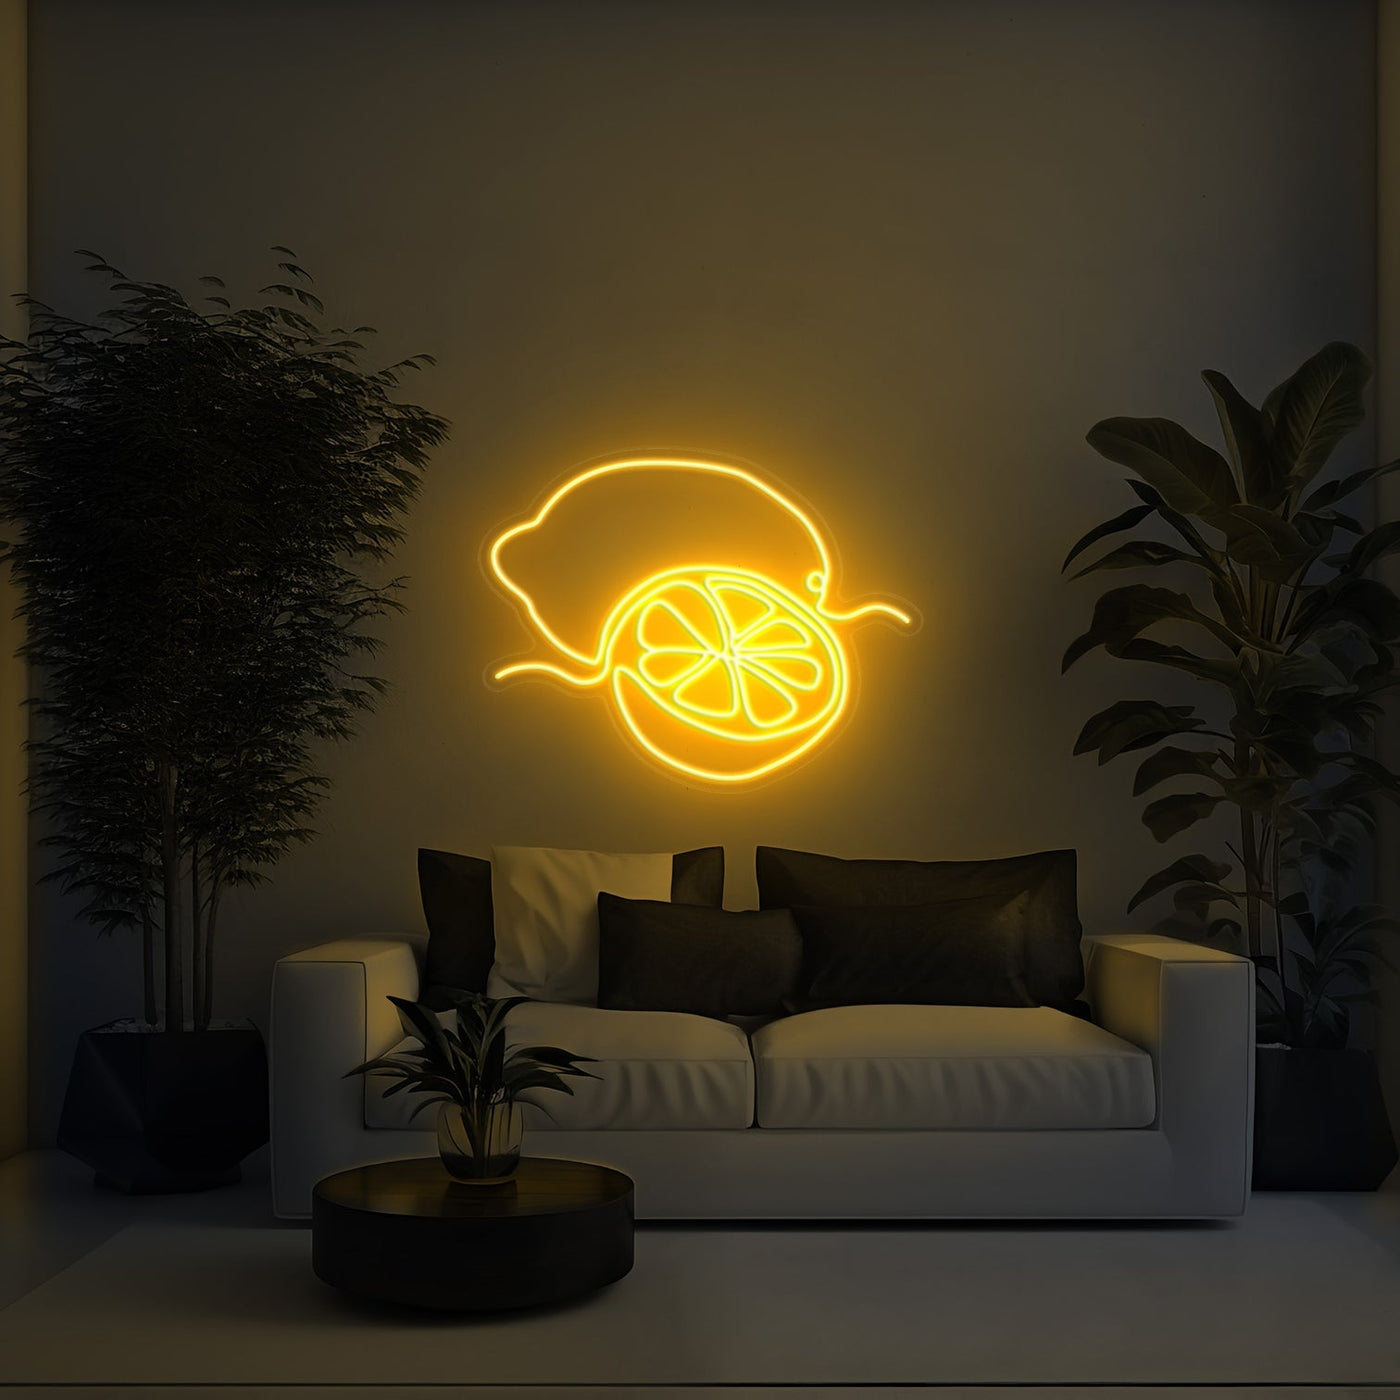 Lemon Aesthetic LED Neon Sign - 30 InchGolden Yellow